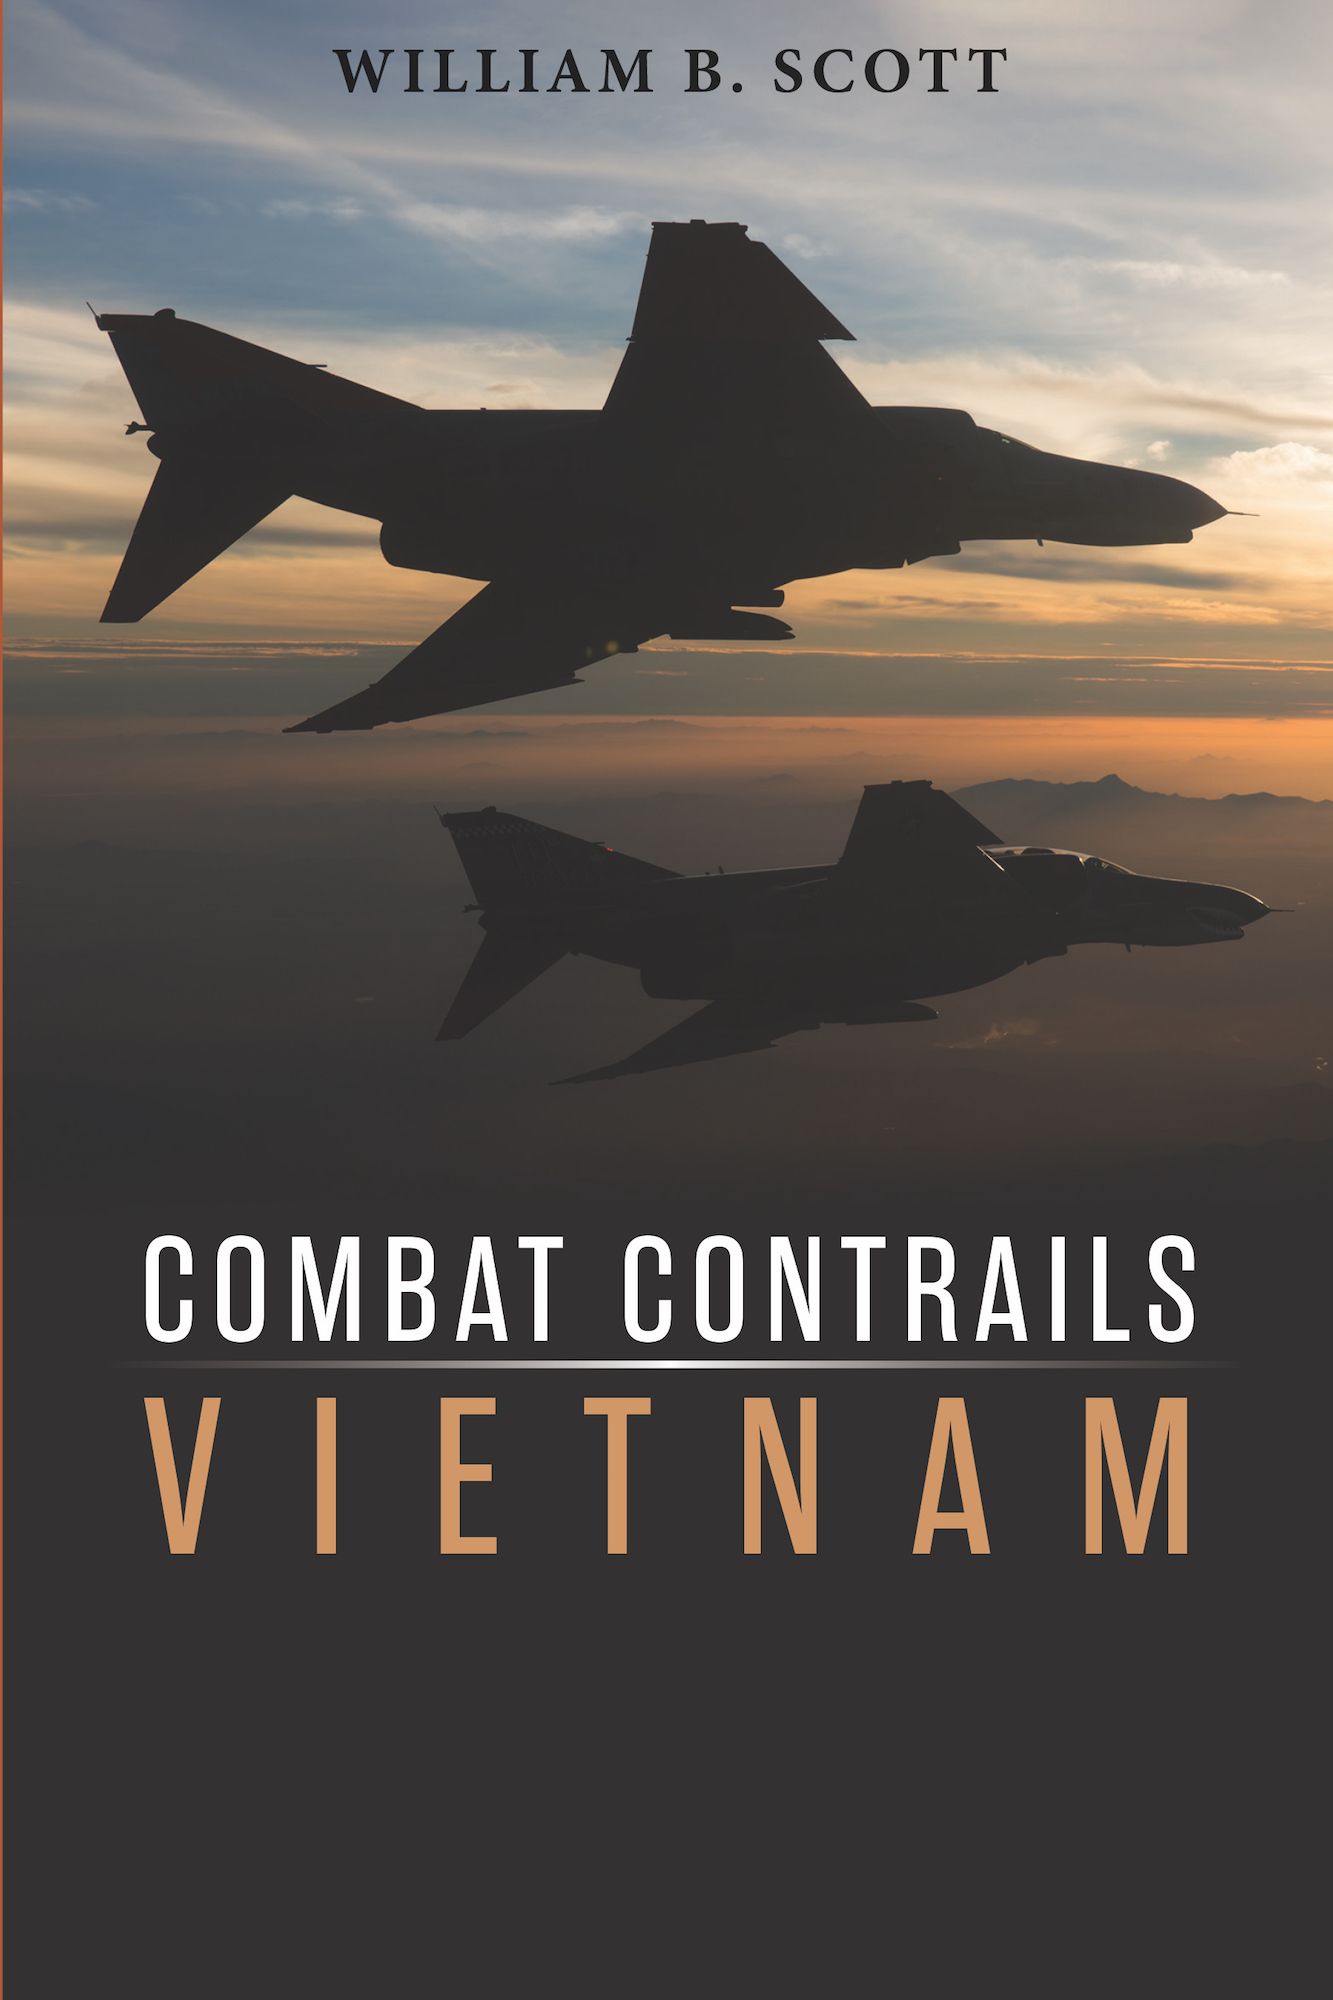 BOOK REVIEW: Combat Contrails - Vietnam.